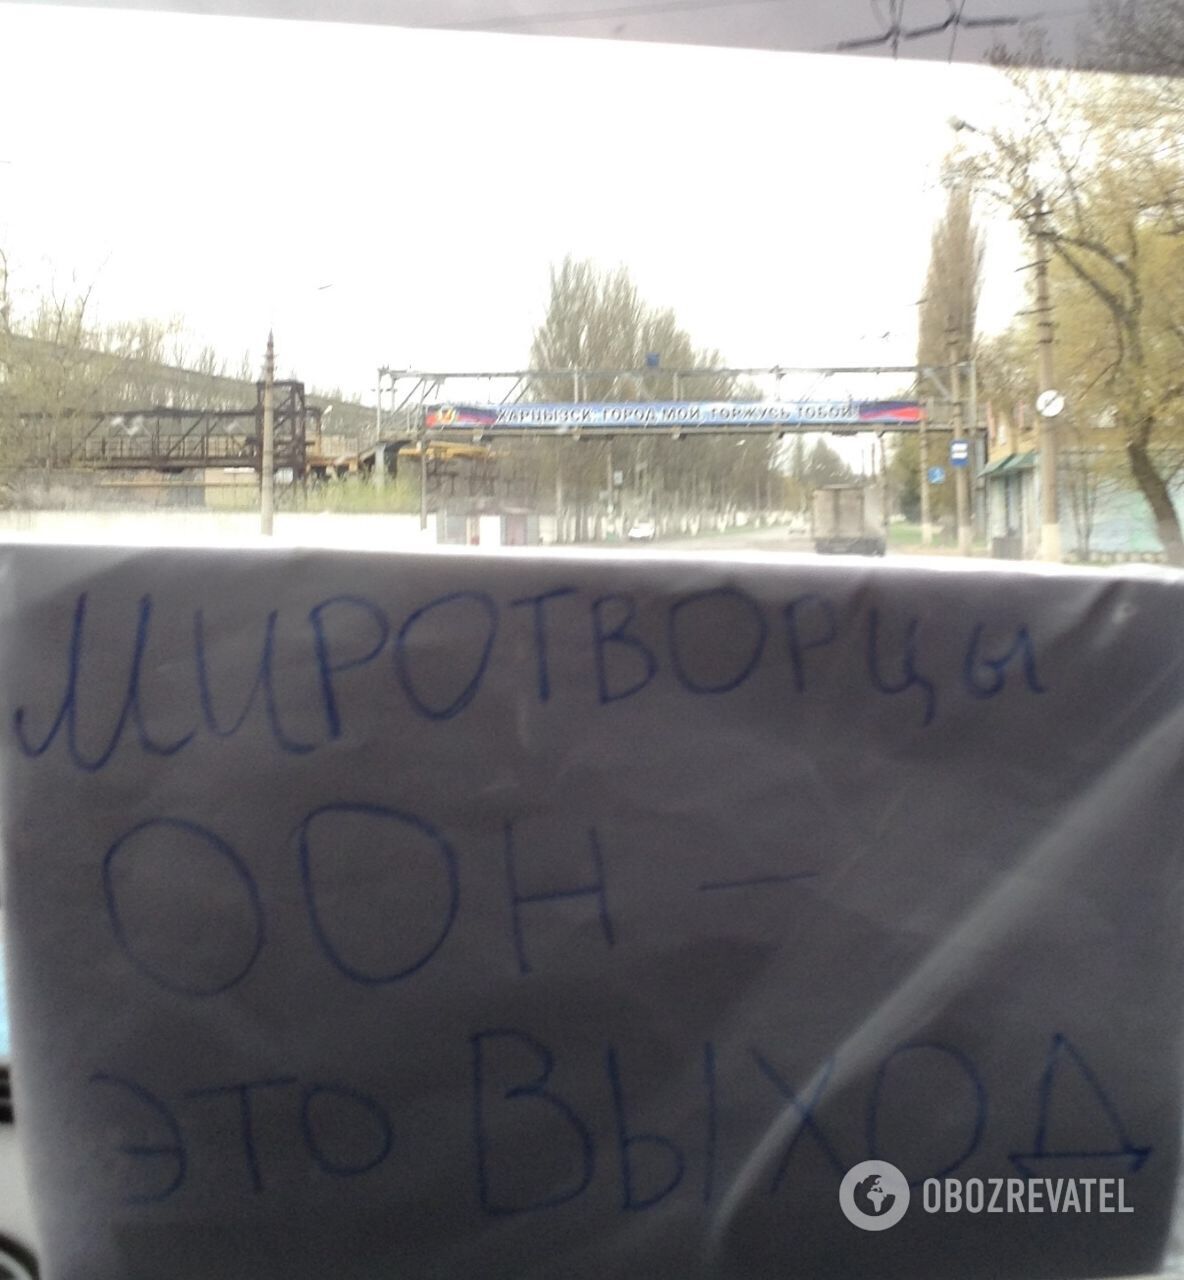 Жители Донецка захотели миротворцев и запустили флешмоб